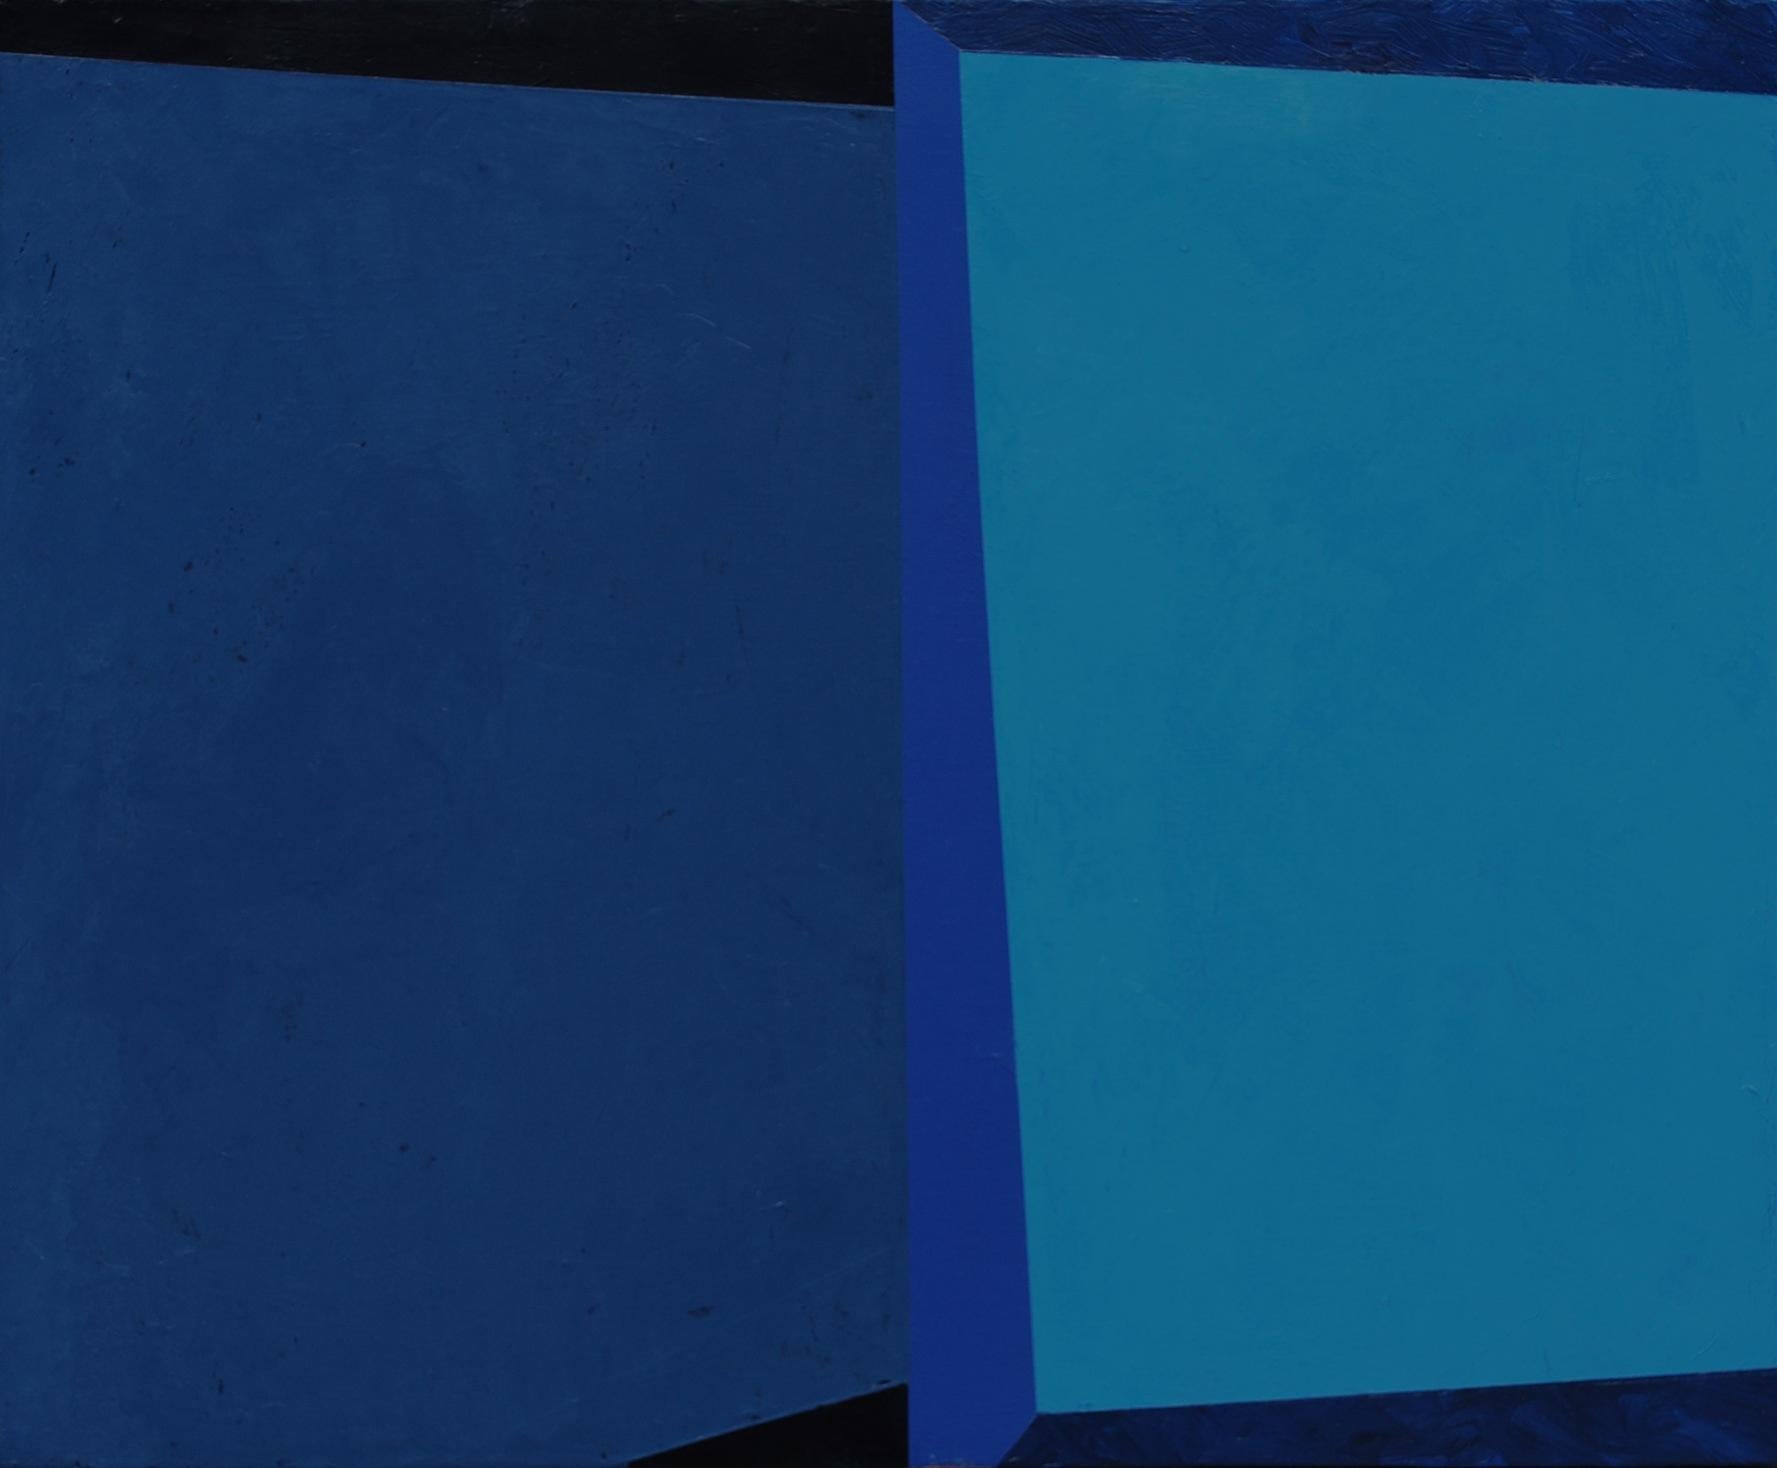 Im Mittelpunkt der künstlerischen Praxis von Macyn Bolt steht das Interesse an den Qualitäten von Reflexion, Spiegelung und kontrastierenden Perspektiven, die dem Raum der abstrakten Malerei eigen sind. Mit den dramatischen und subtilen